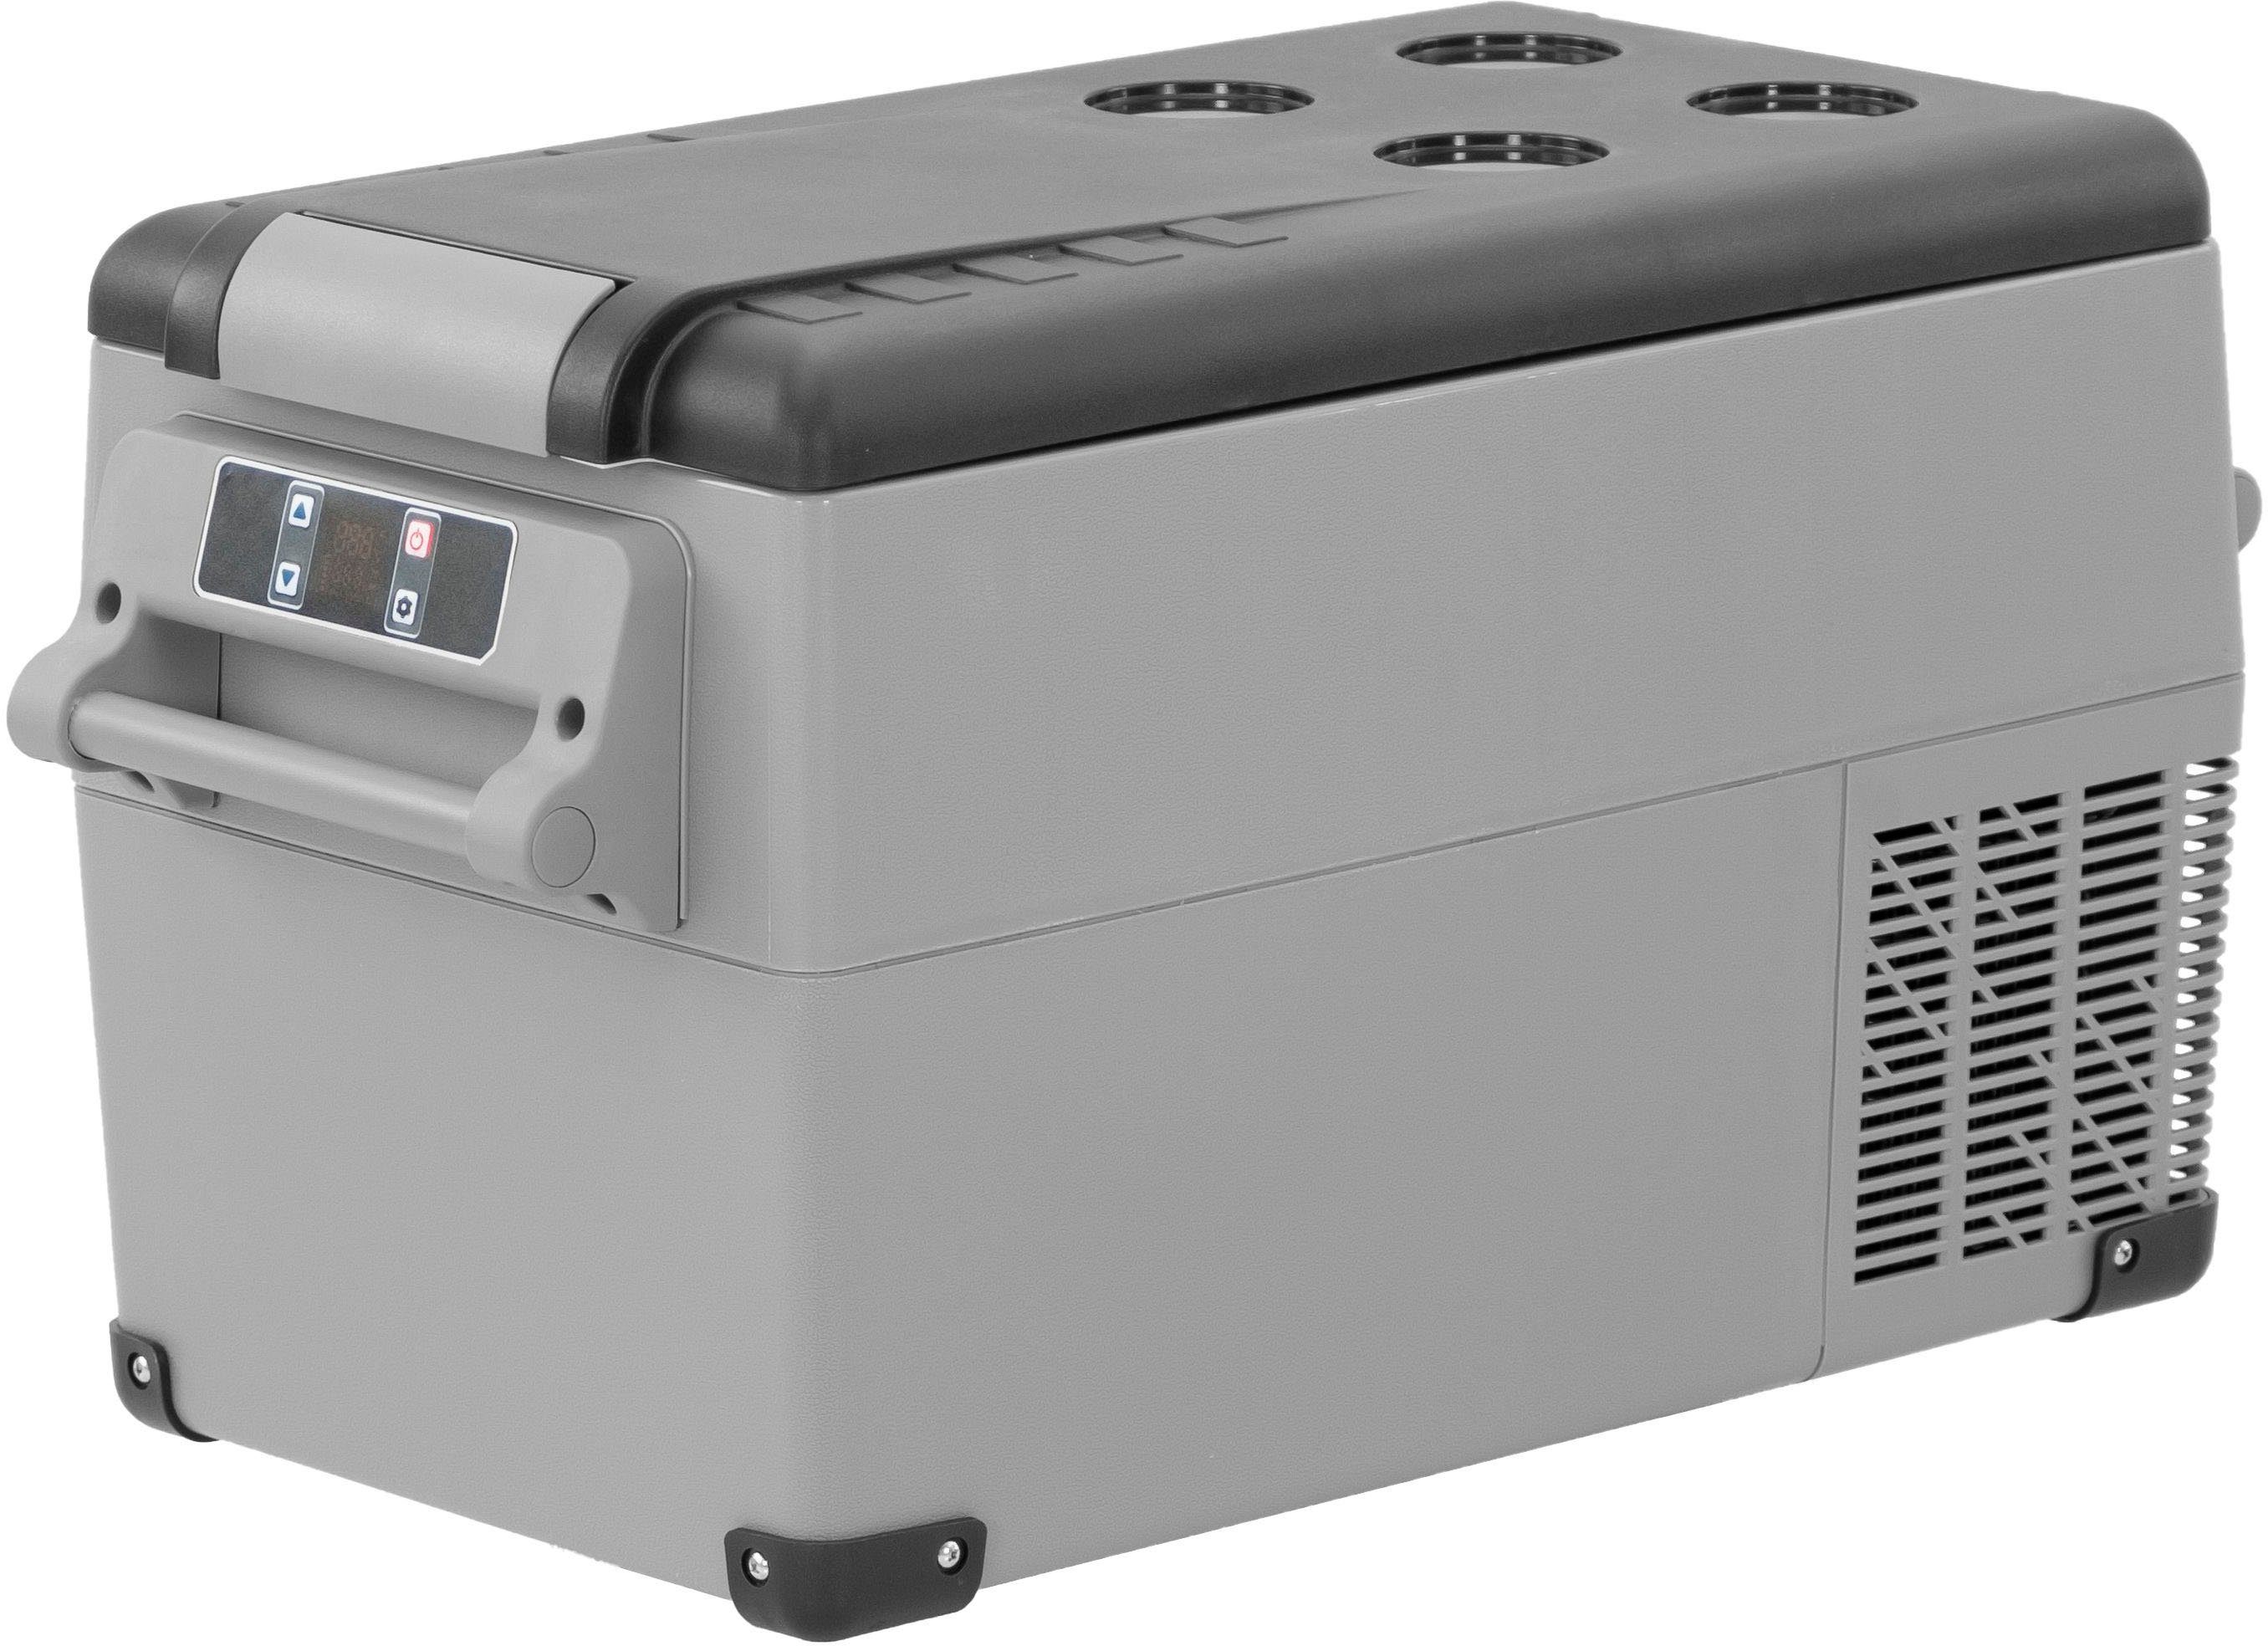 Hause Kompressor-Kühlbox, ALPICOOL zu 35L im CF35, Fahrzeug 35 Elektrische nutzbar l, Kühlbox und